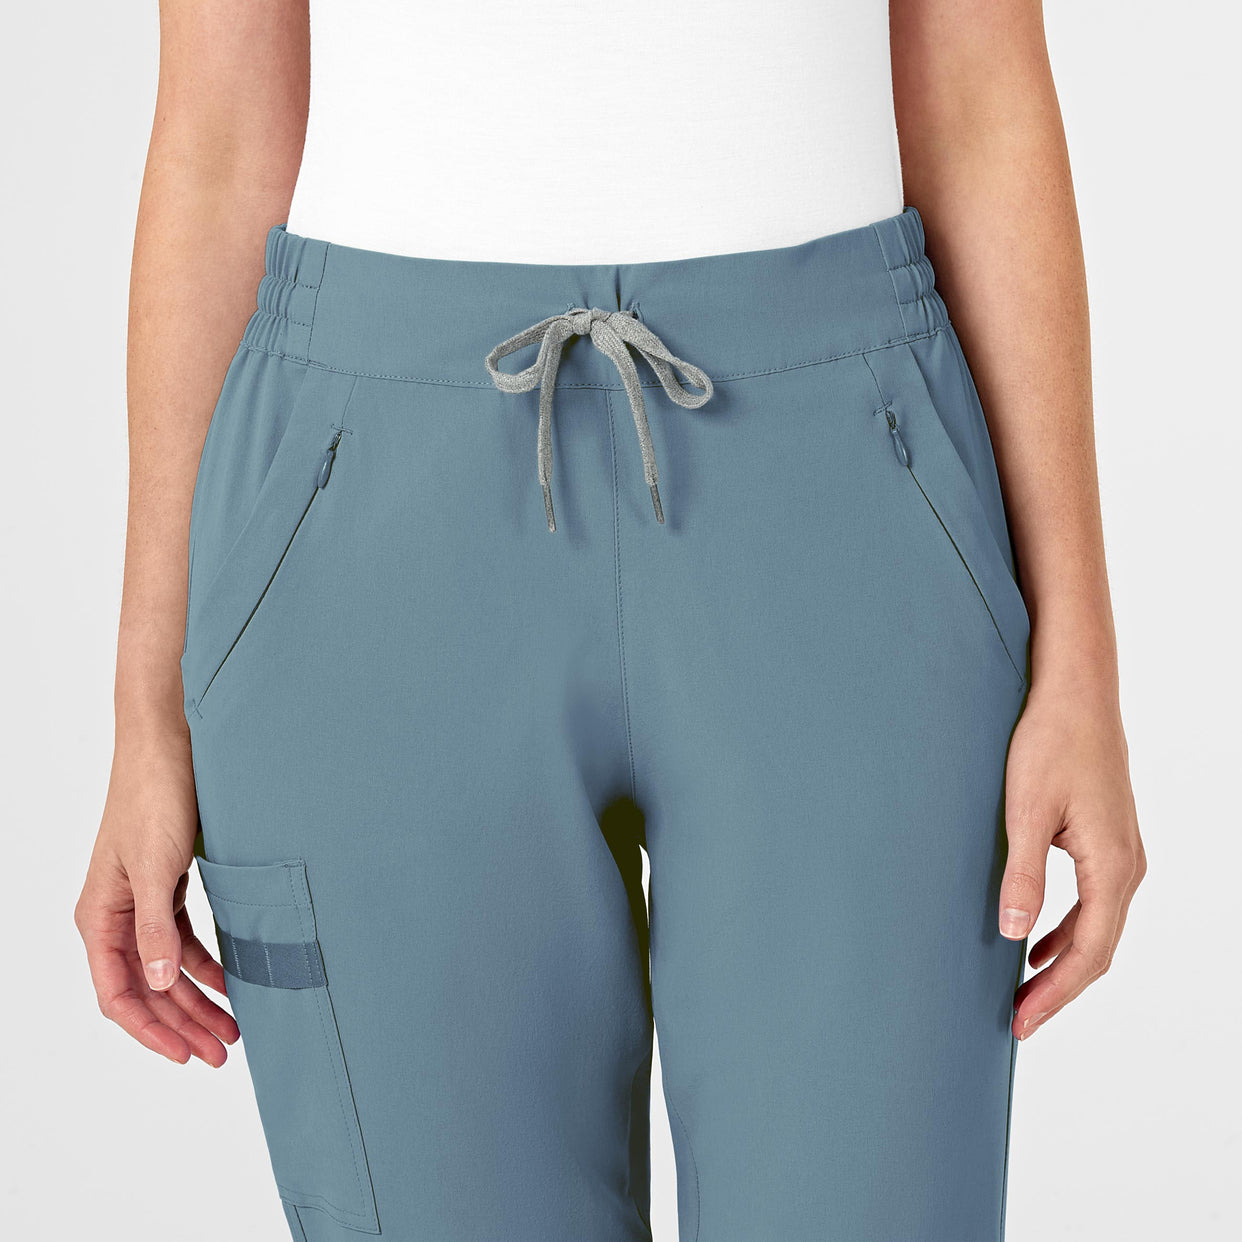 RENEW Women's Jogger Scrub Pant Elemental Blue front detail